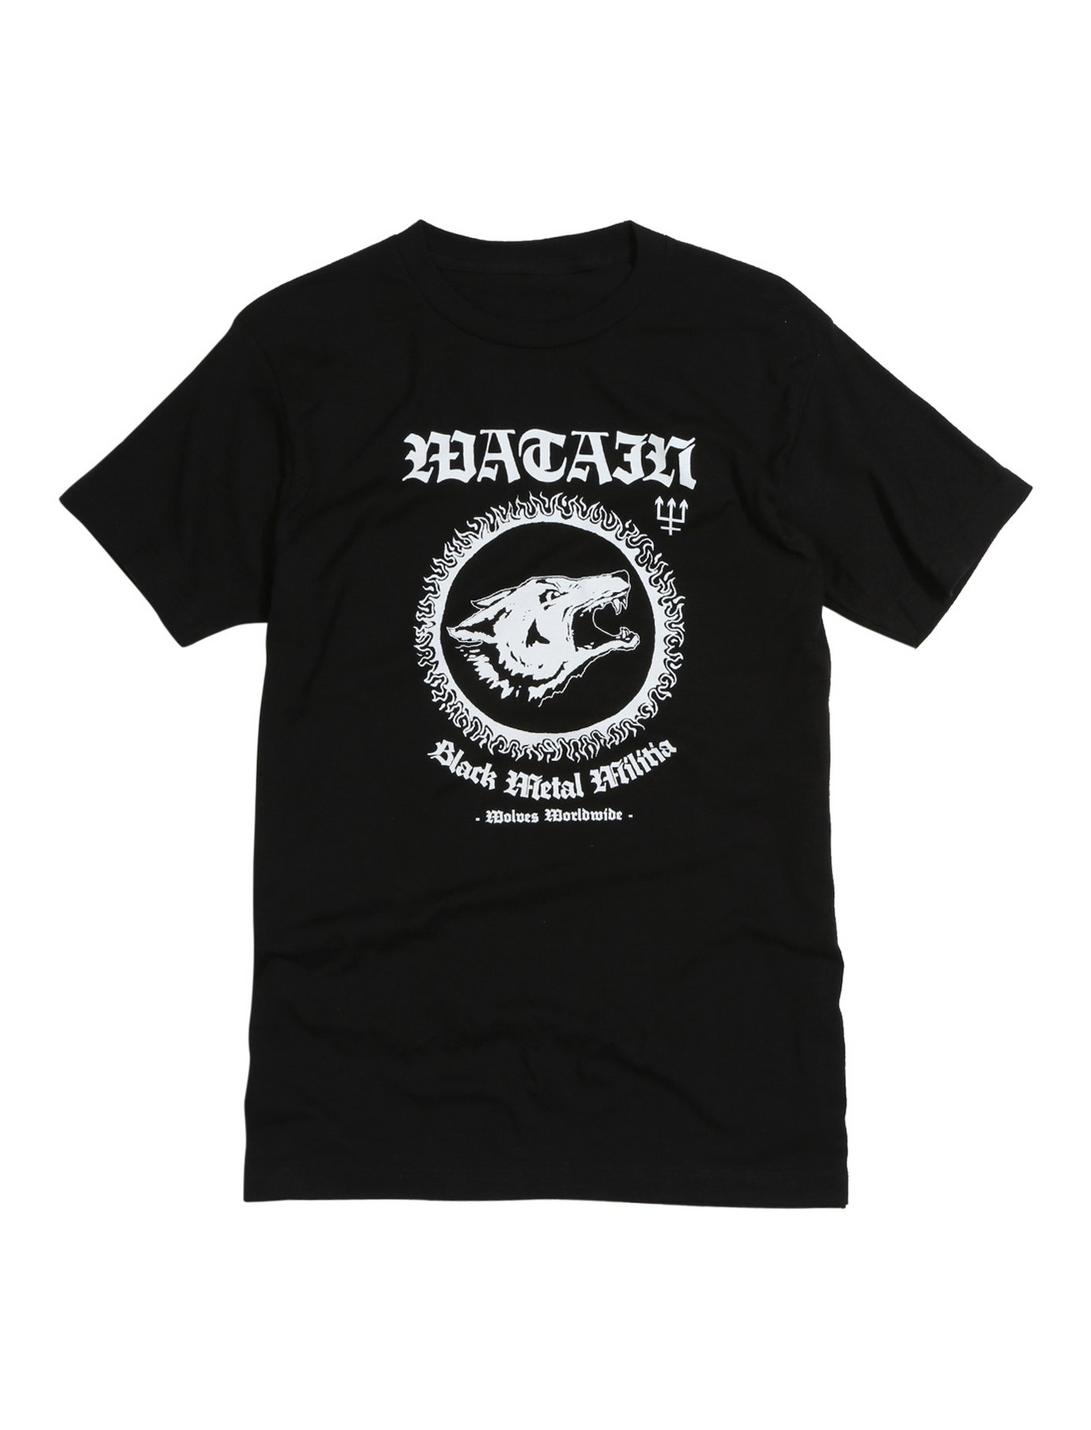 Watain Black Metal Militia T-Shirt, BLACK, hi-res